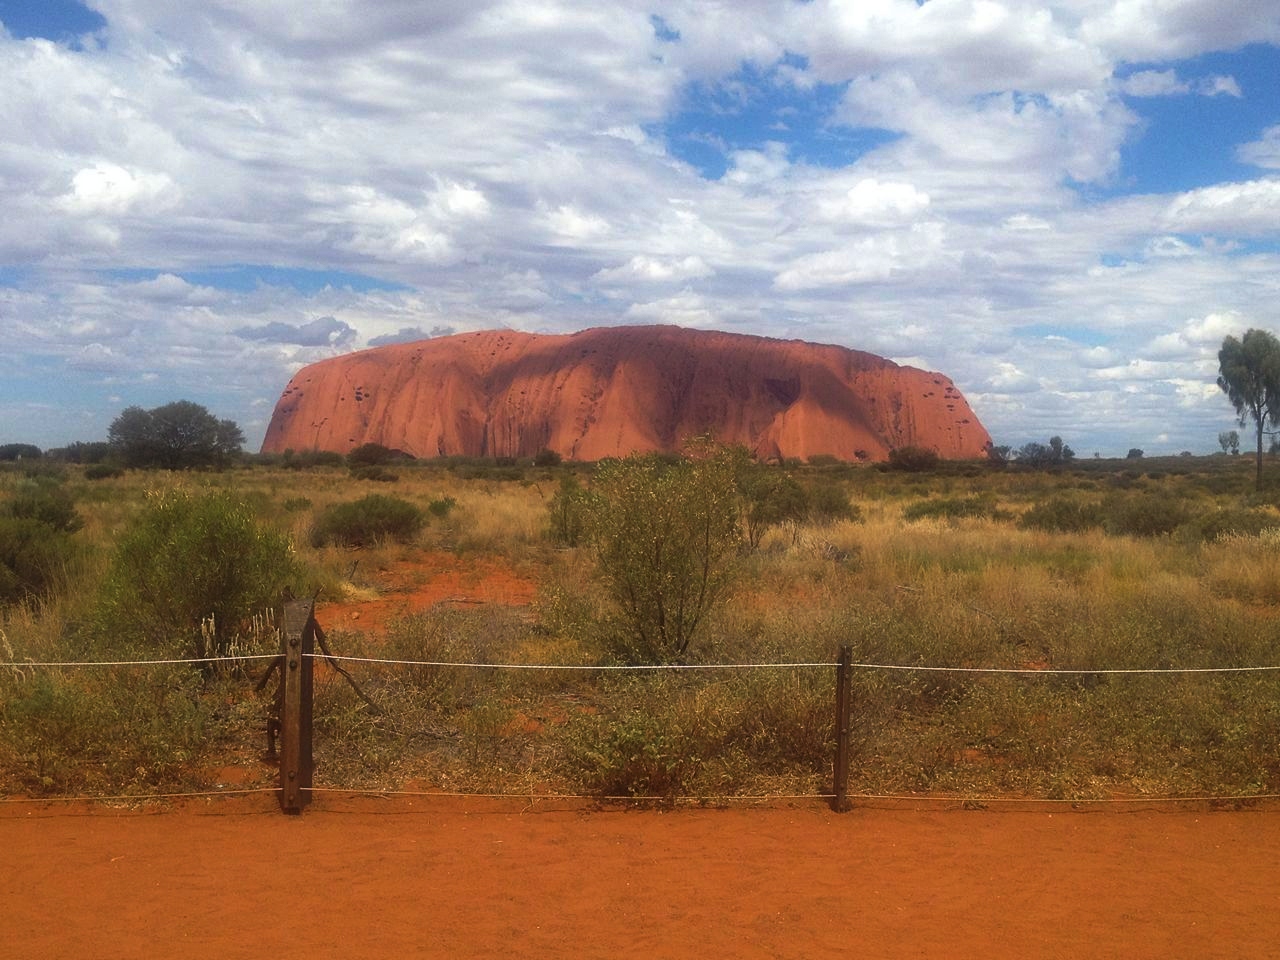 Los aborígenes atribuyen a Uluru propiedades místicas. ¿Será cierto?